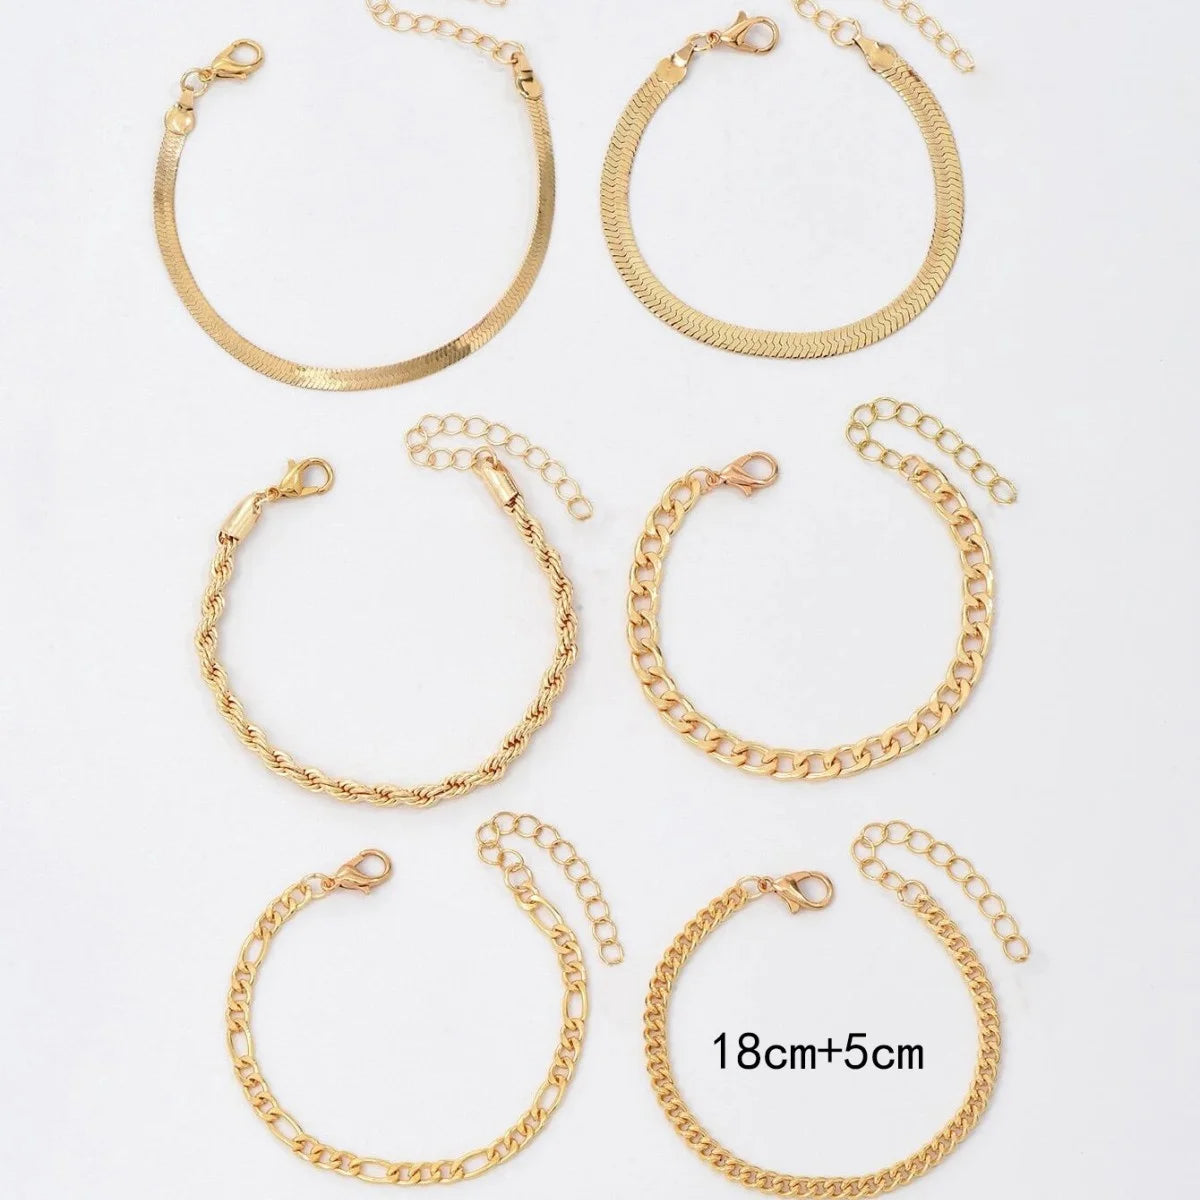 Metal Twist Chain Bracelet Set for Women